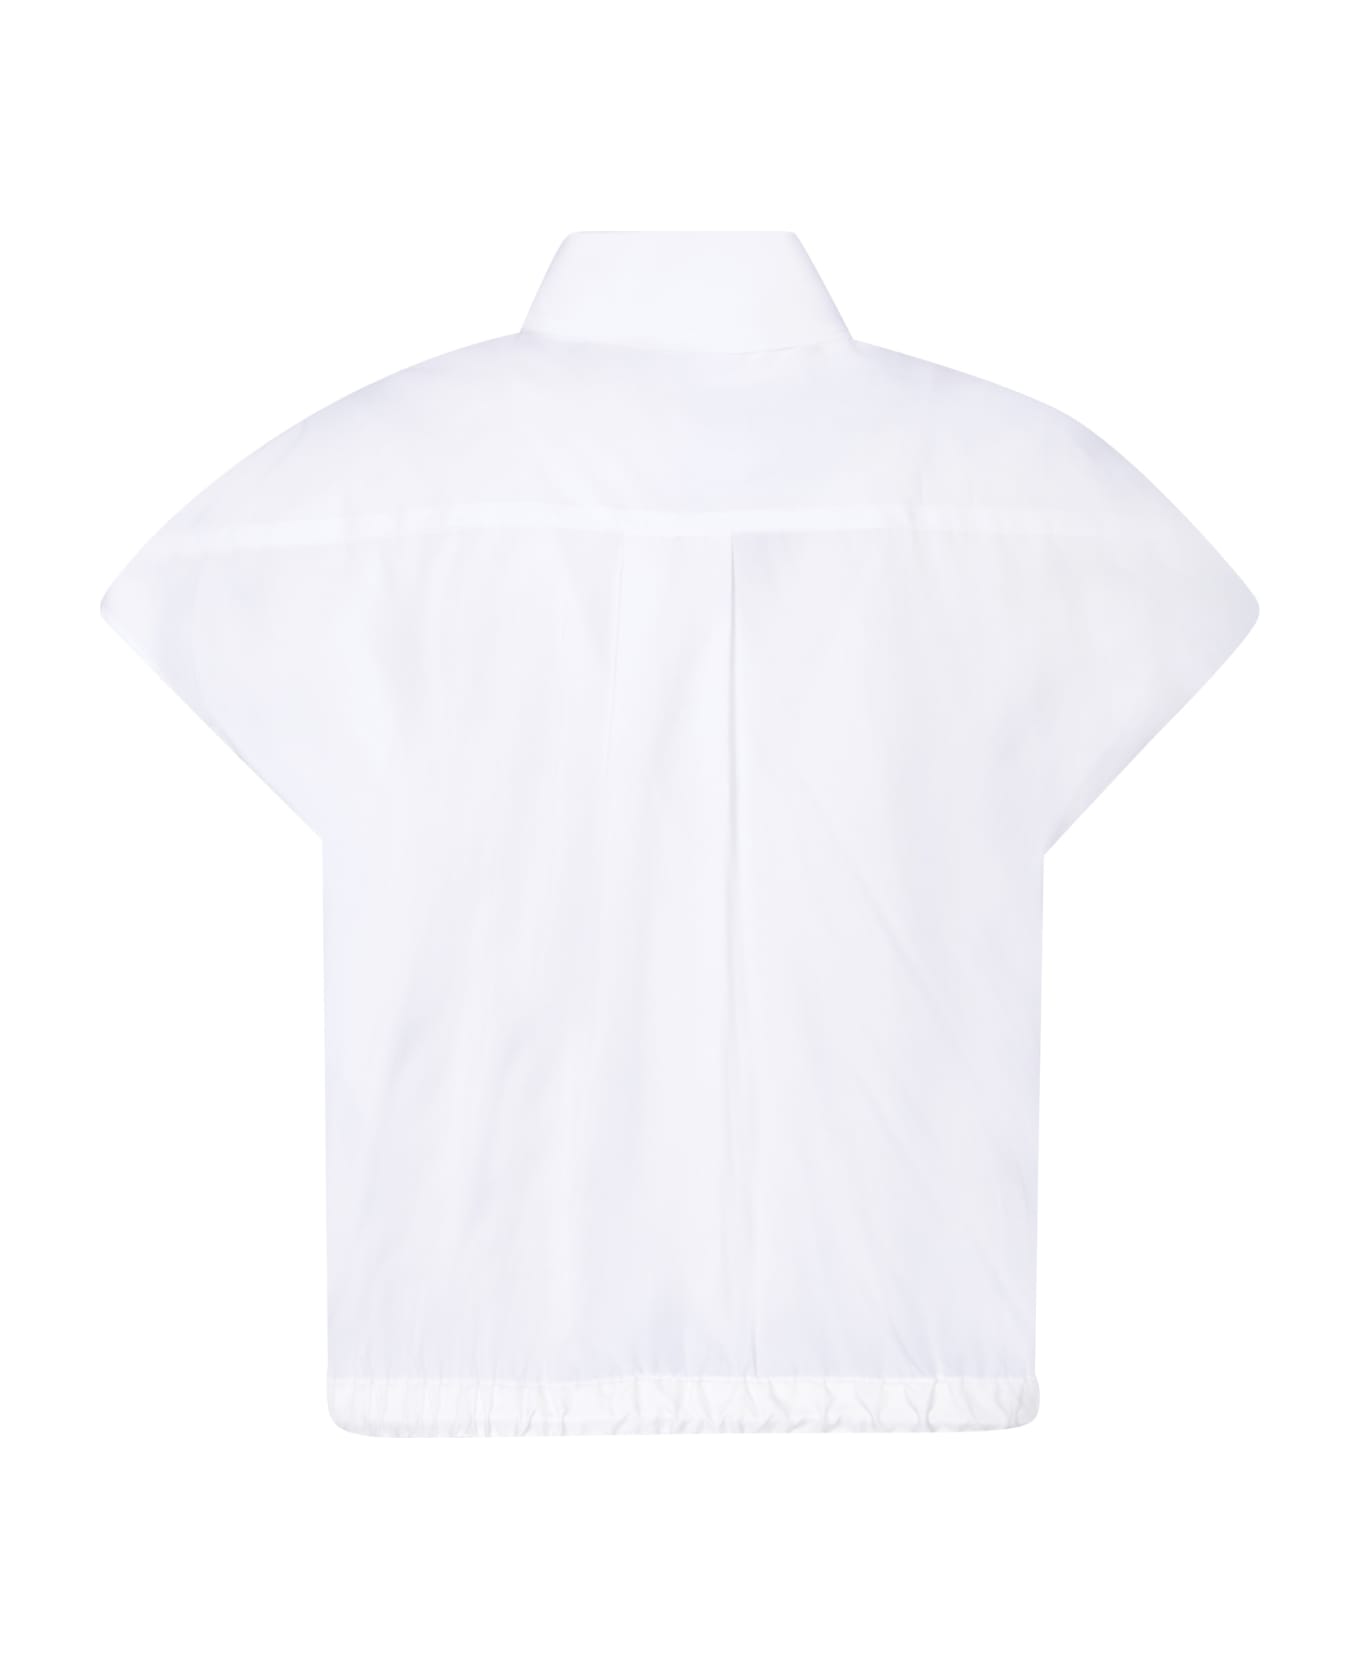 Sacai Thomas White Shirt - White シャツ